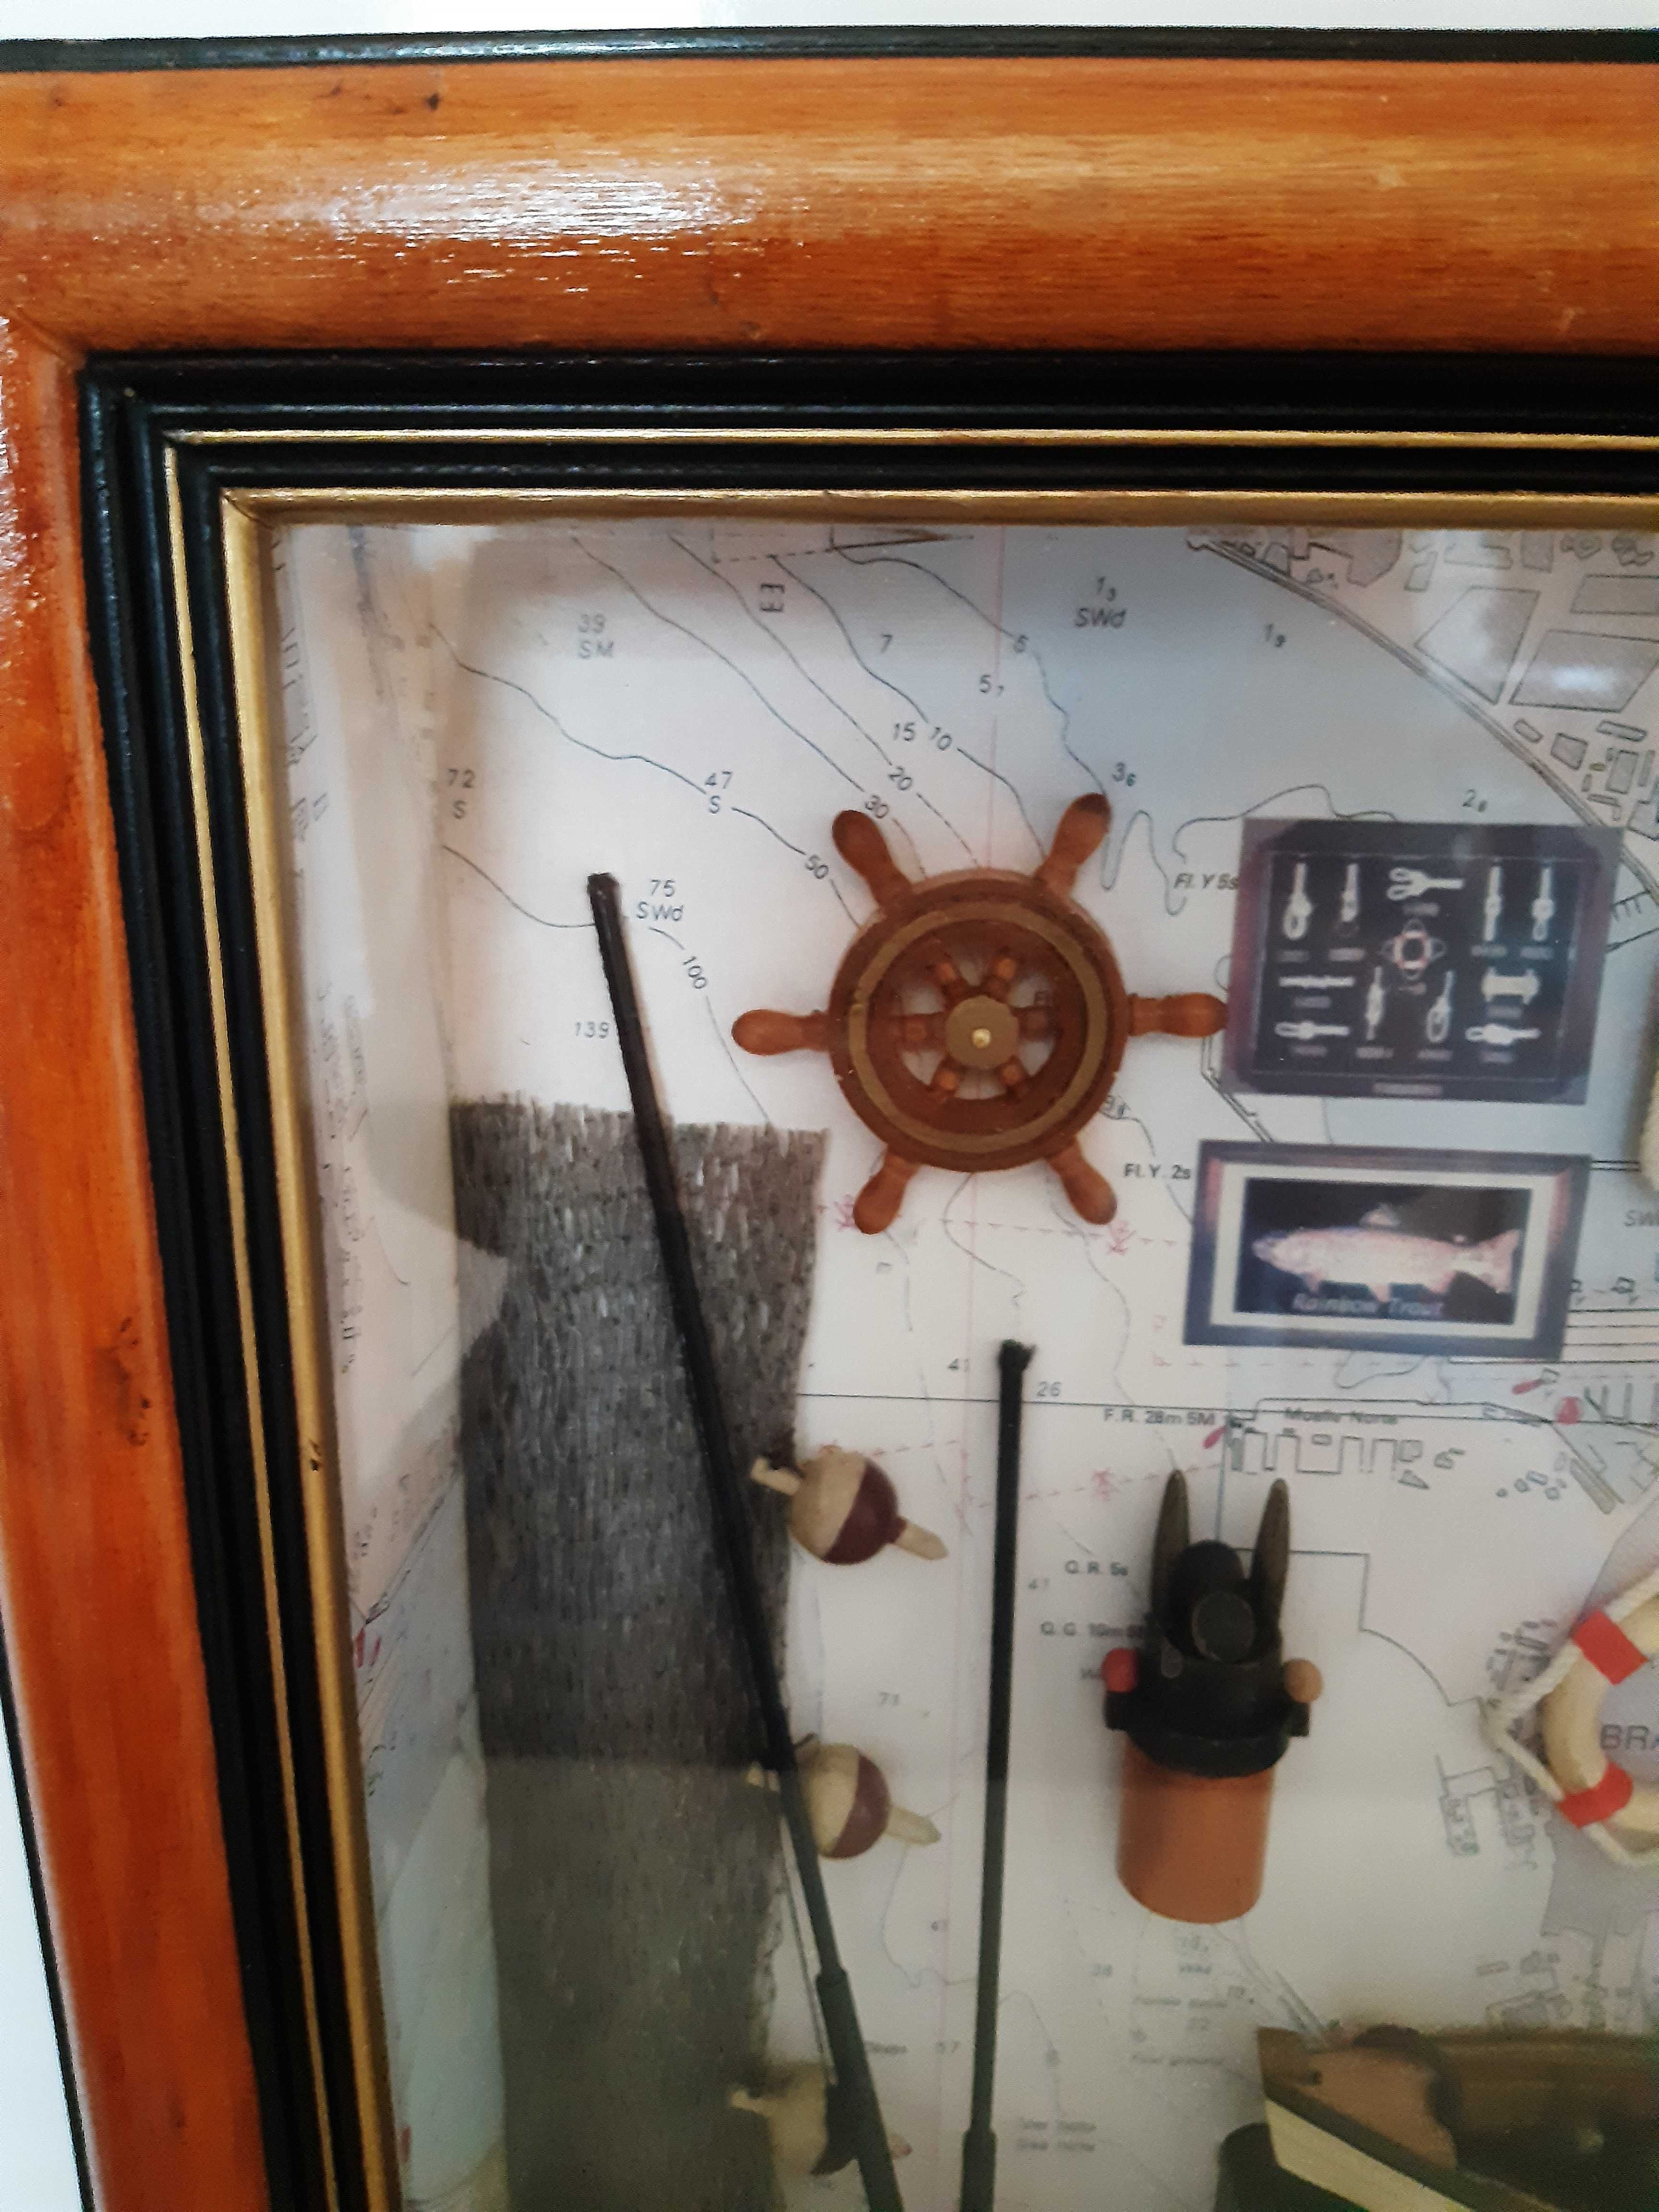 Cutie-tablou din lemn cu tema pescareasca 3D in interior, inalt 36cm